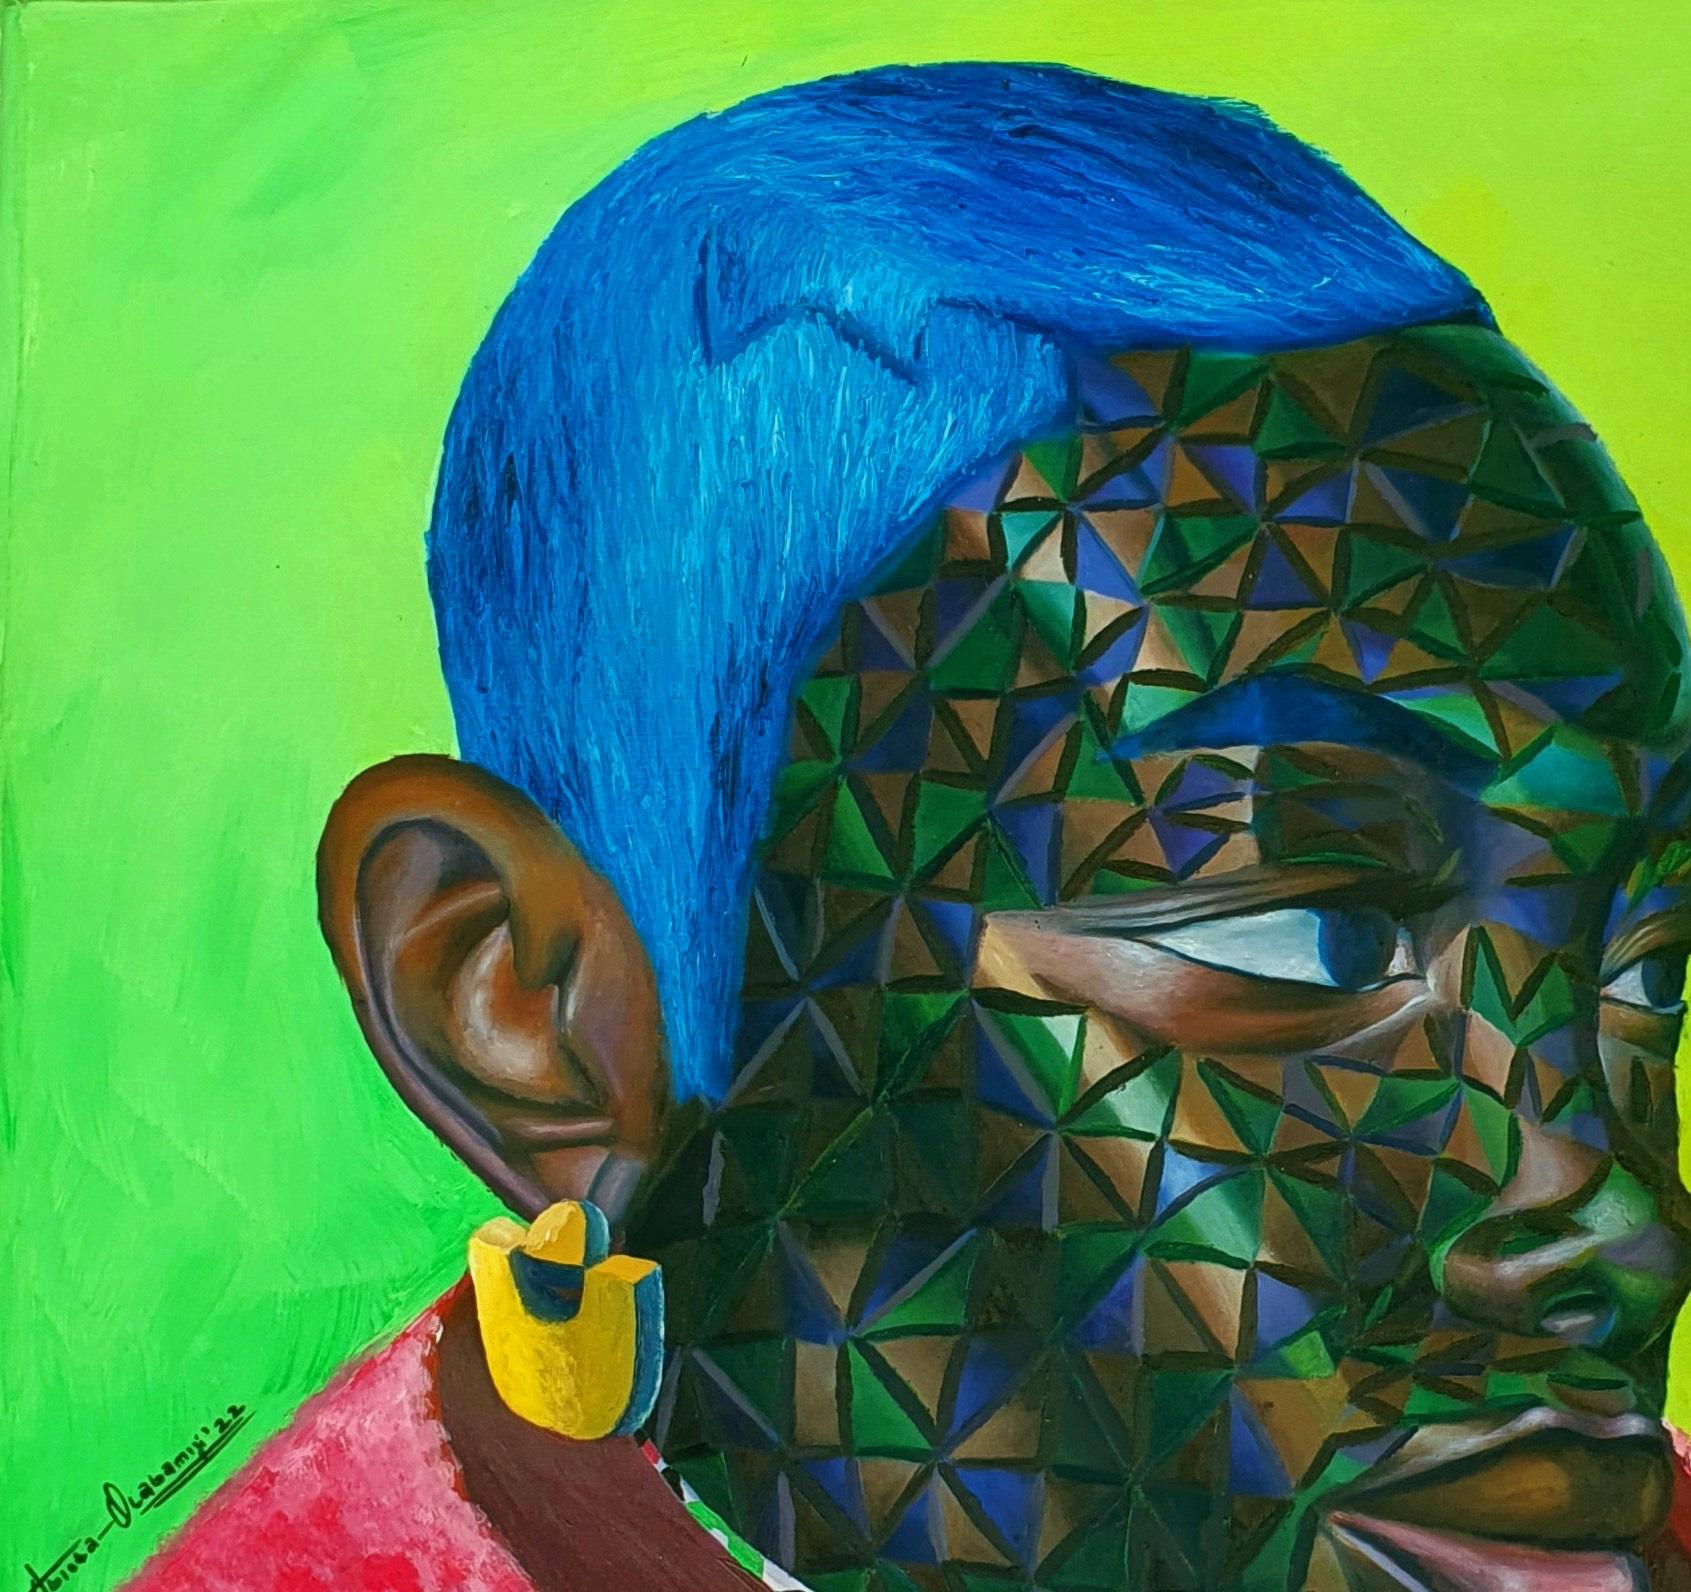 Ayanmo (Fate) - Contemporary Mixed Media Art by Abiola Olabamiji